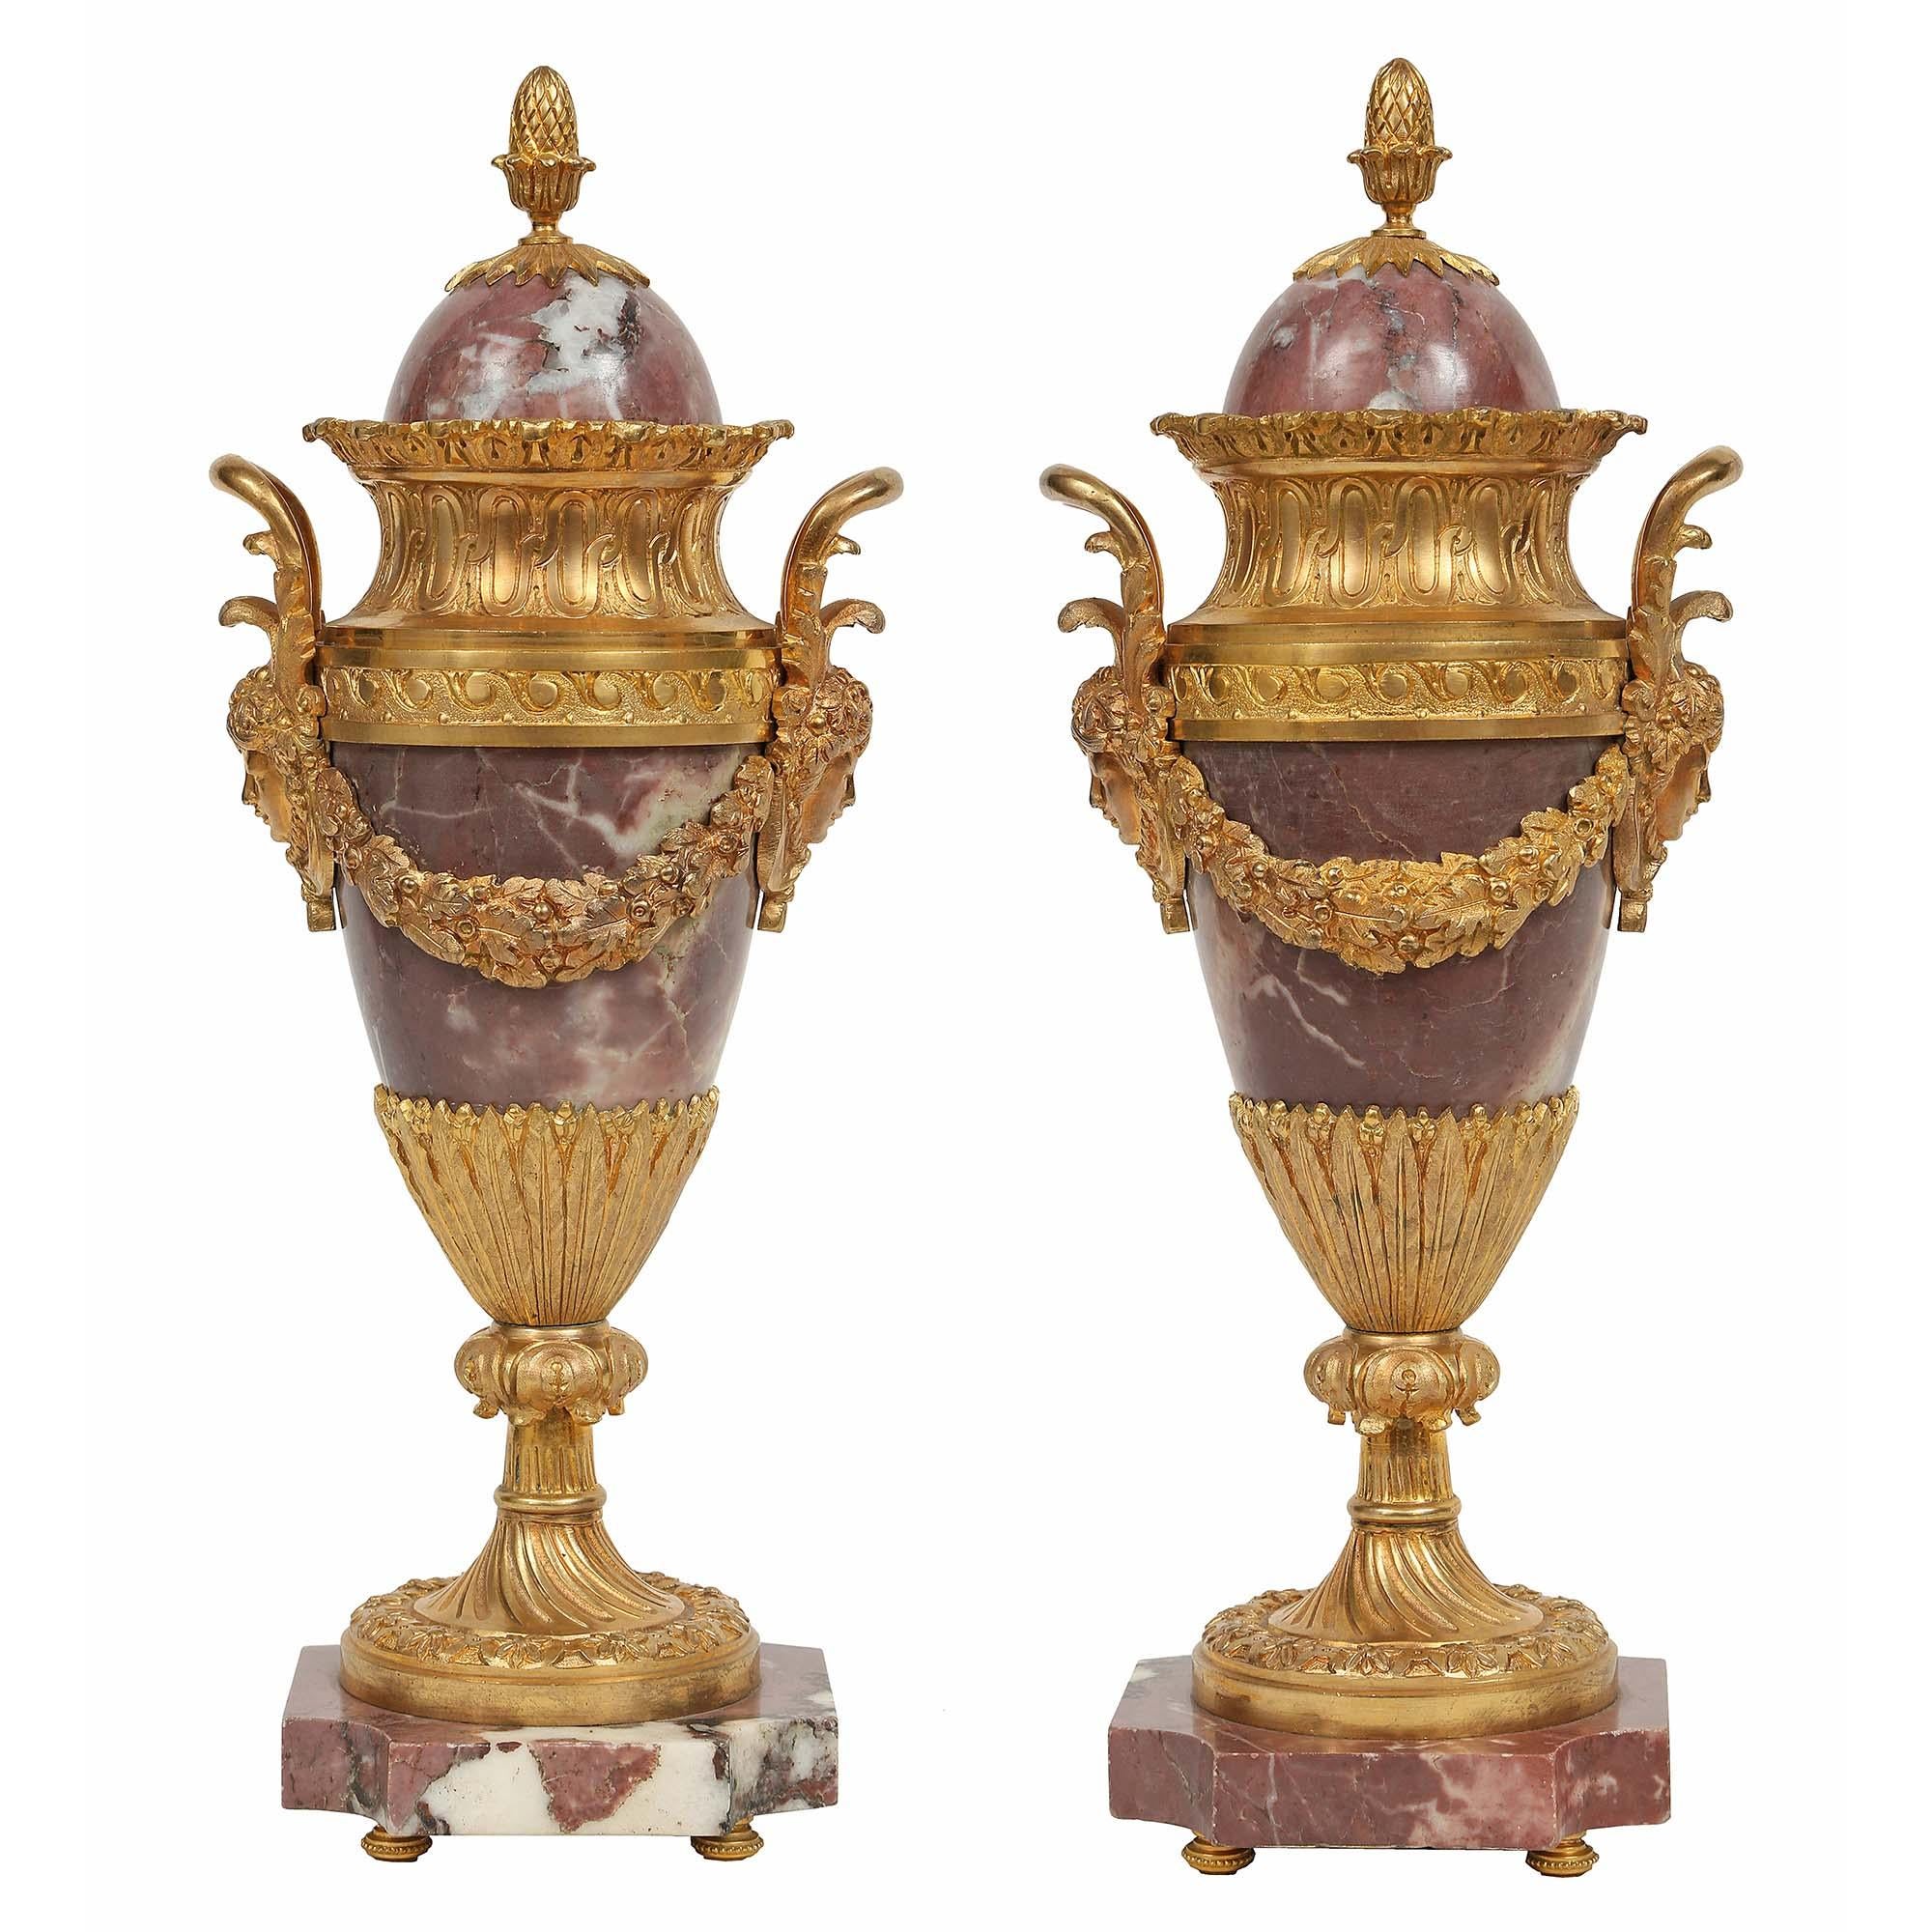 Une très belle paire de cassolettes françaises du milieu du 19ème siècle, de style Louis XVI, en bréchet, violette et bronze doré. La paire est surélevée par d'exquis supports en topie ormolu. Au-dessus se trouve une étonnante base en marbre de